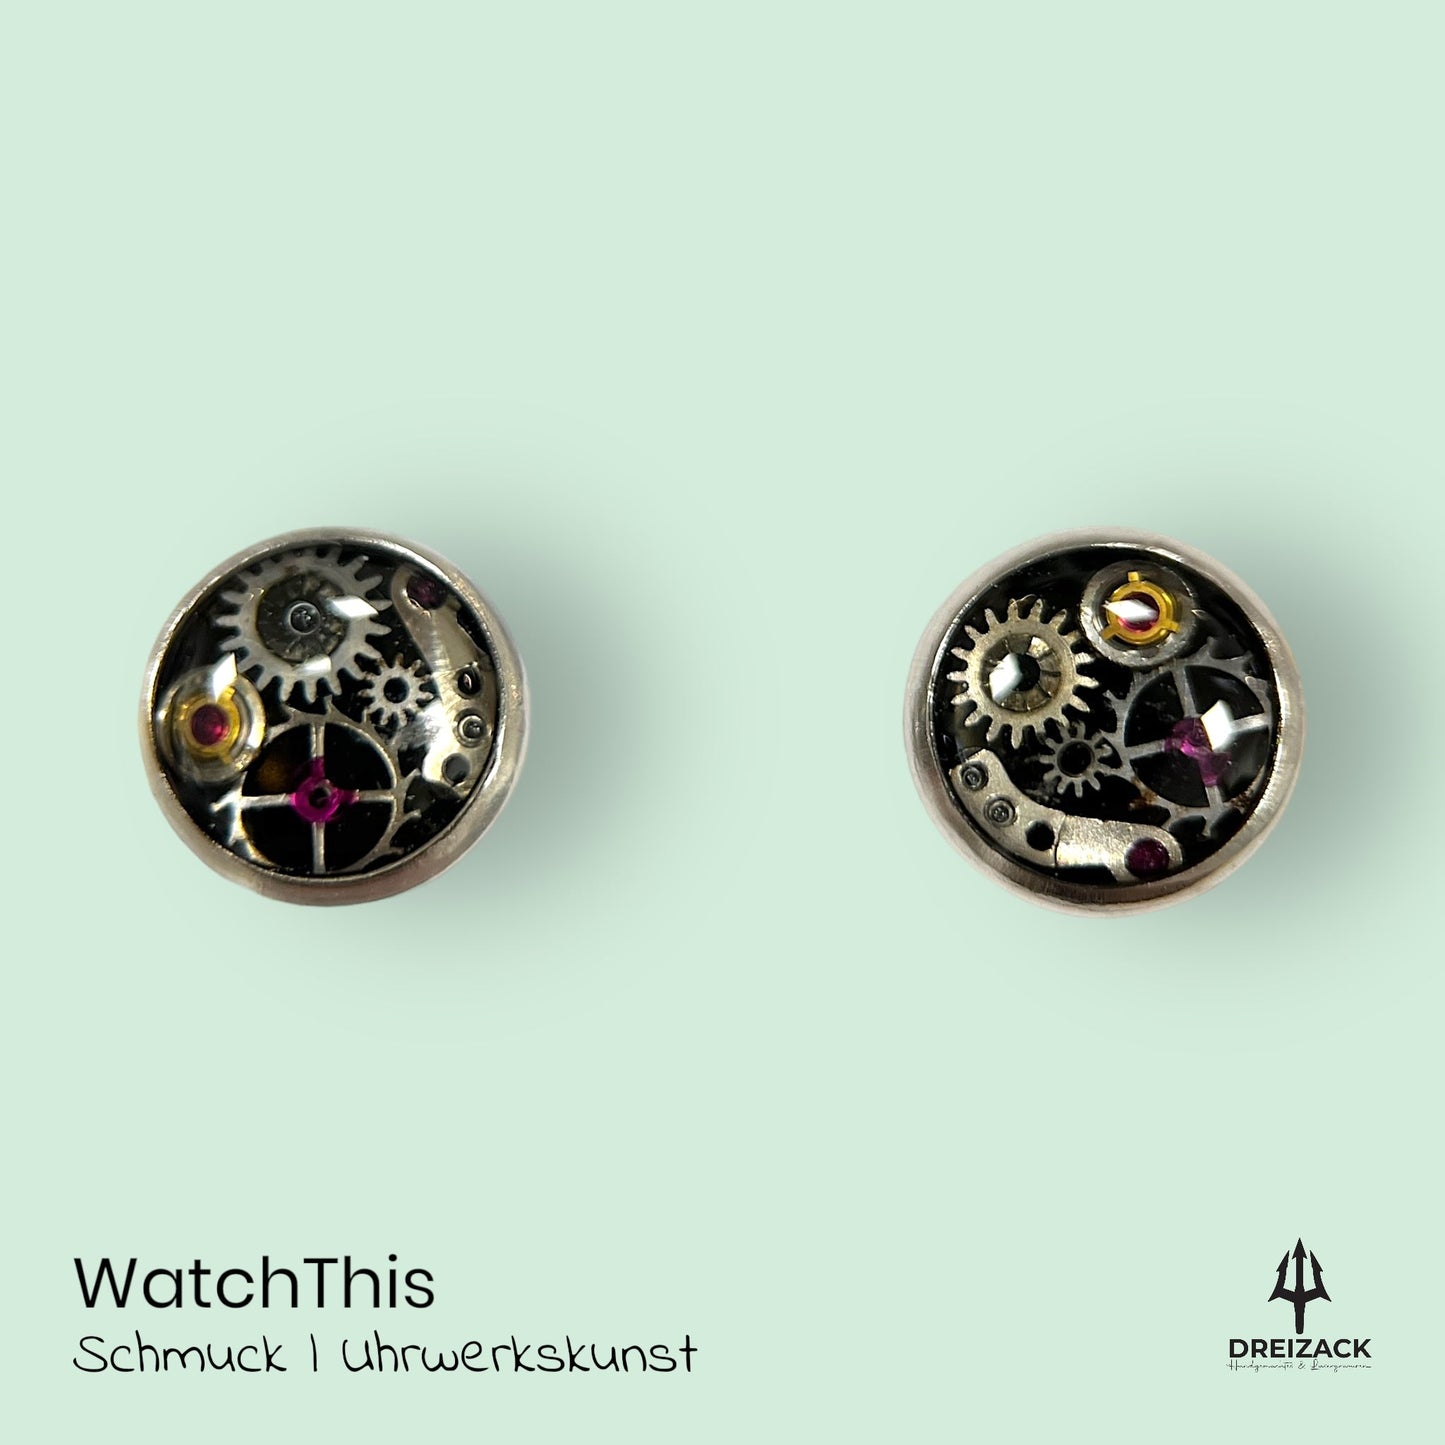 Ohrstecker von WatchThis - Zeitlose Eleganz aus Uhrwerken 6mm | Apollo Schmuck WatchThis oesterreich handgemachte geschenke in wien